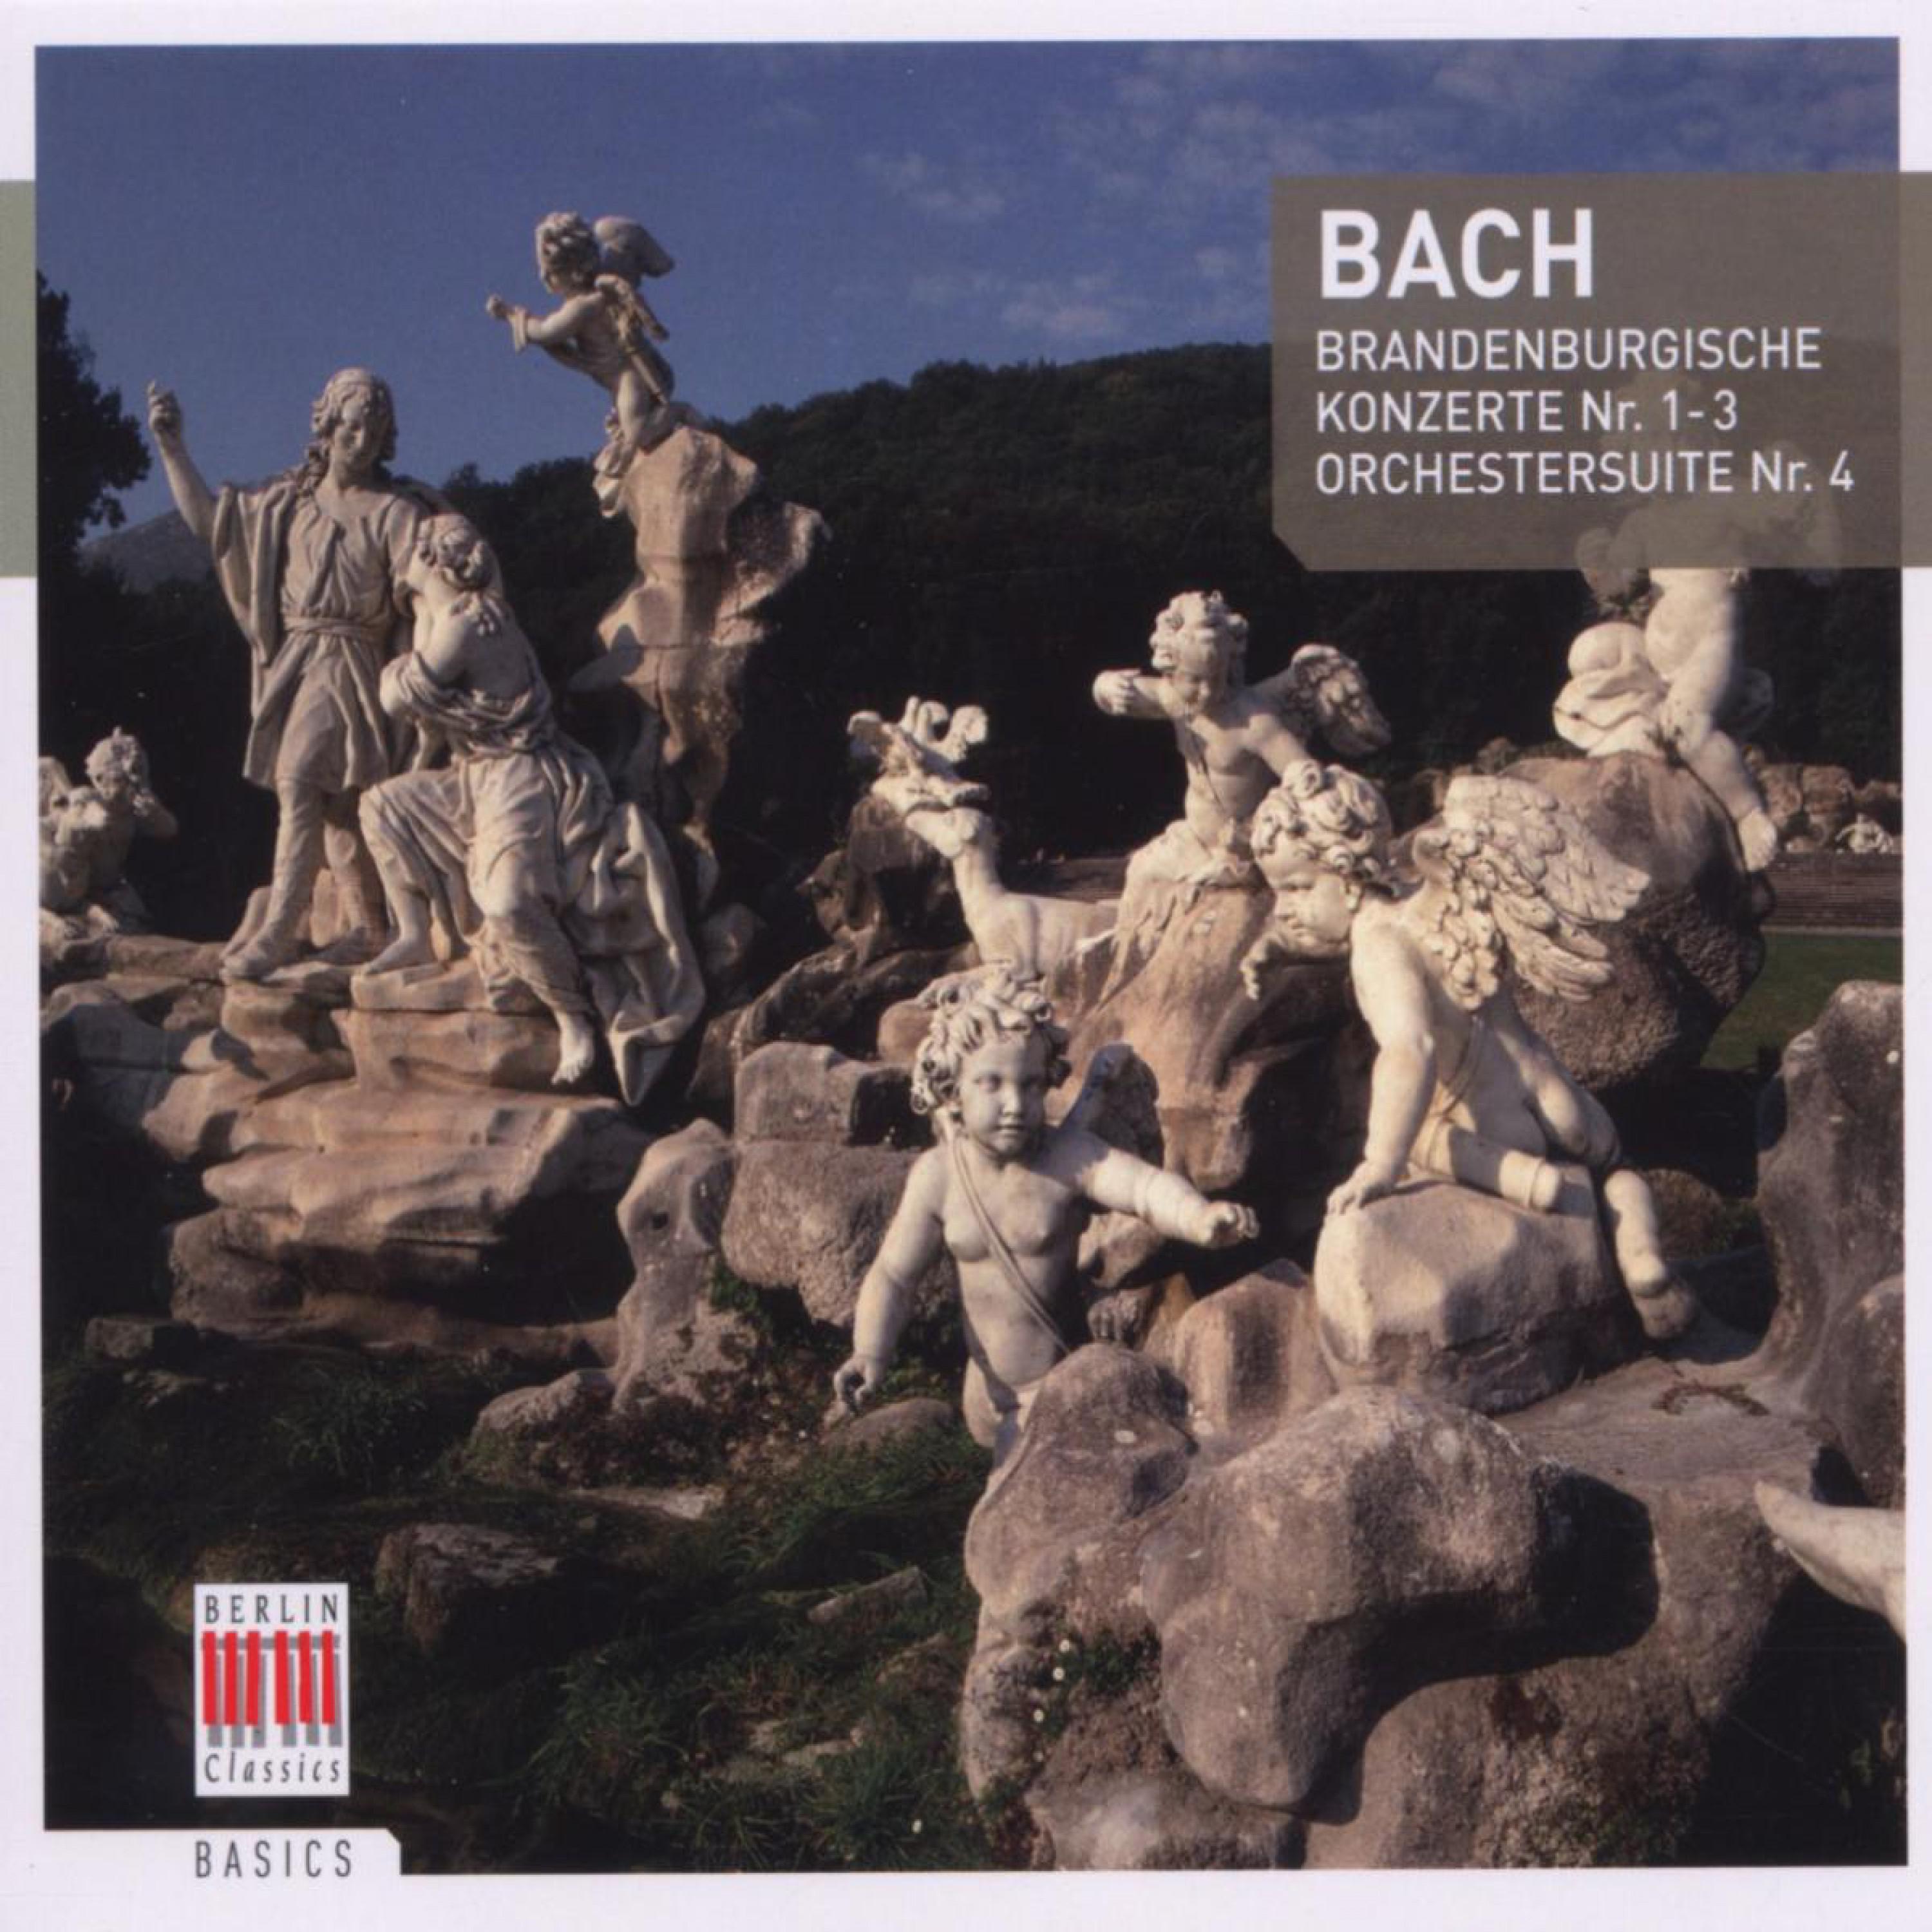 Brandenburg Concerto No. 1 in F Major, BWV 1046: IV. Menuetto - Trio - Menuetto - Polacca - Menuetto - Trio - Menuetto